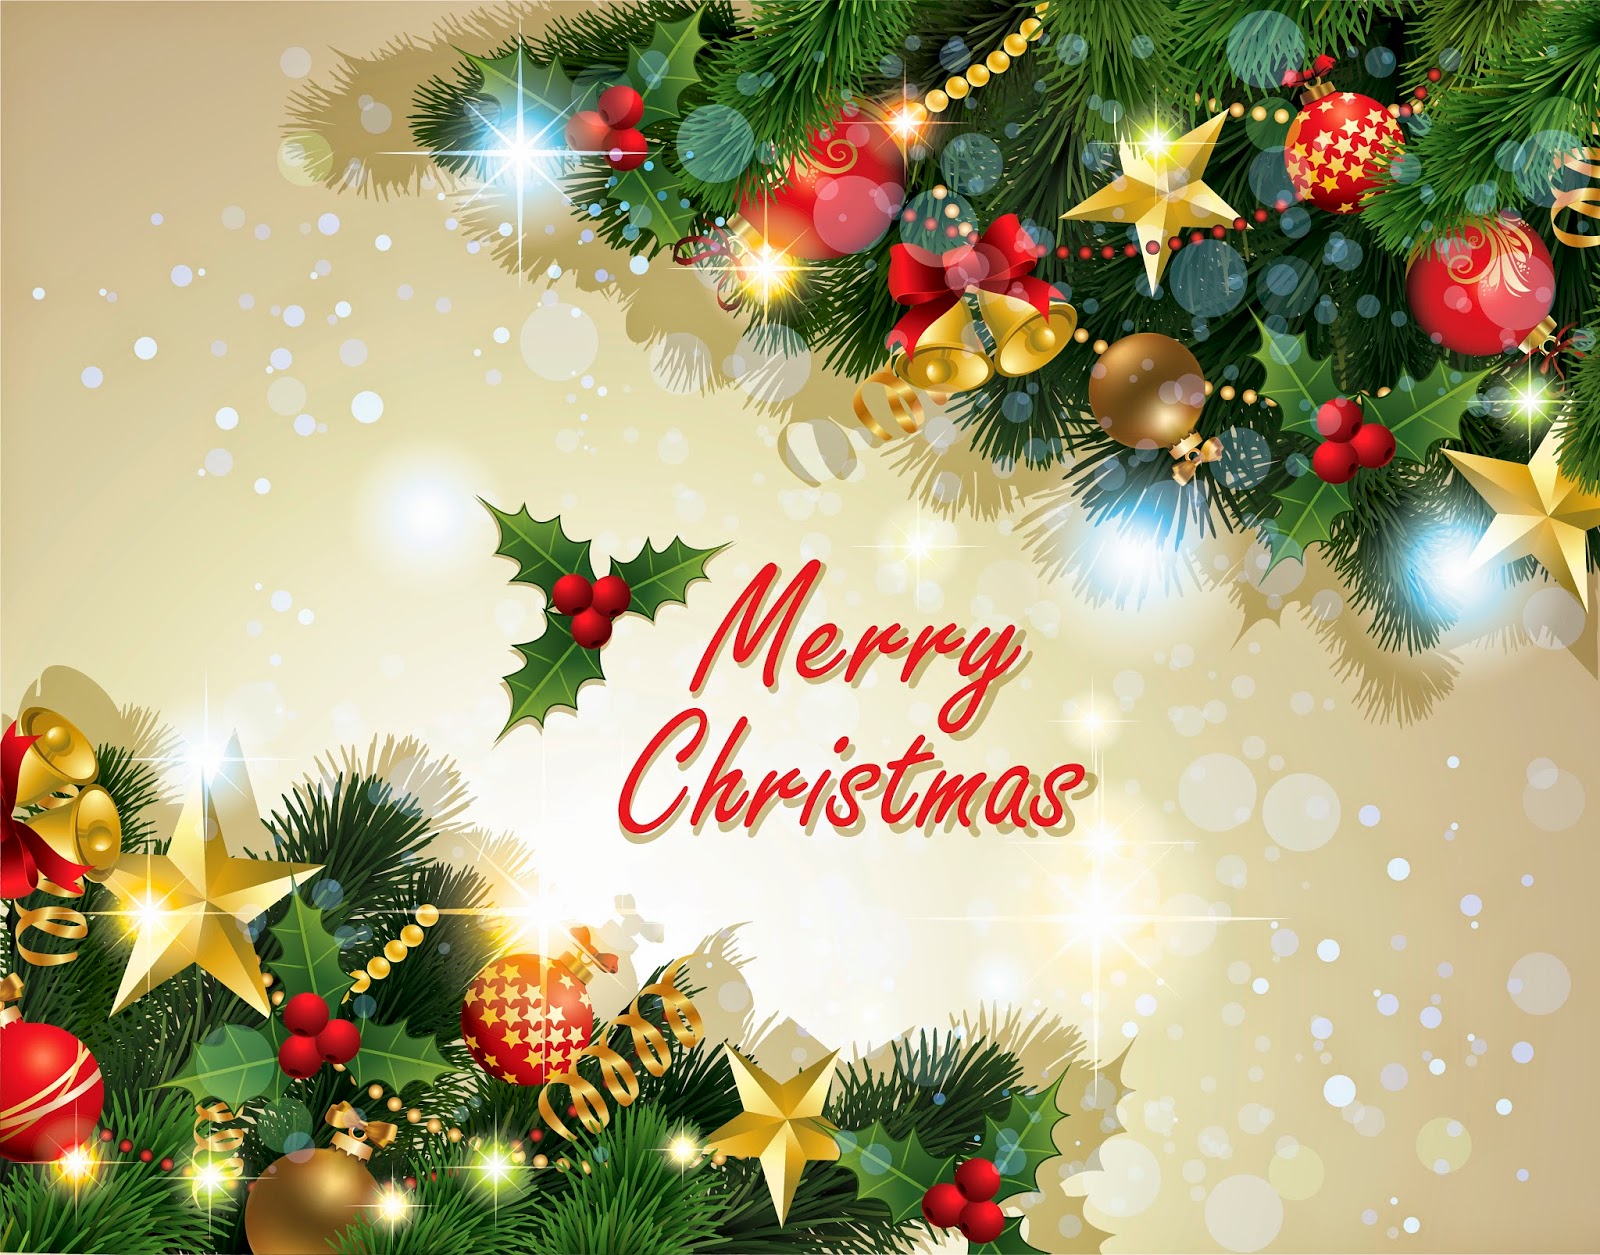 Merry Christmas Best Desktop Wallpaper And Share